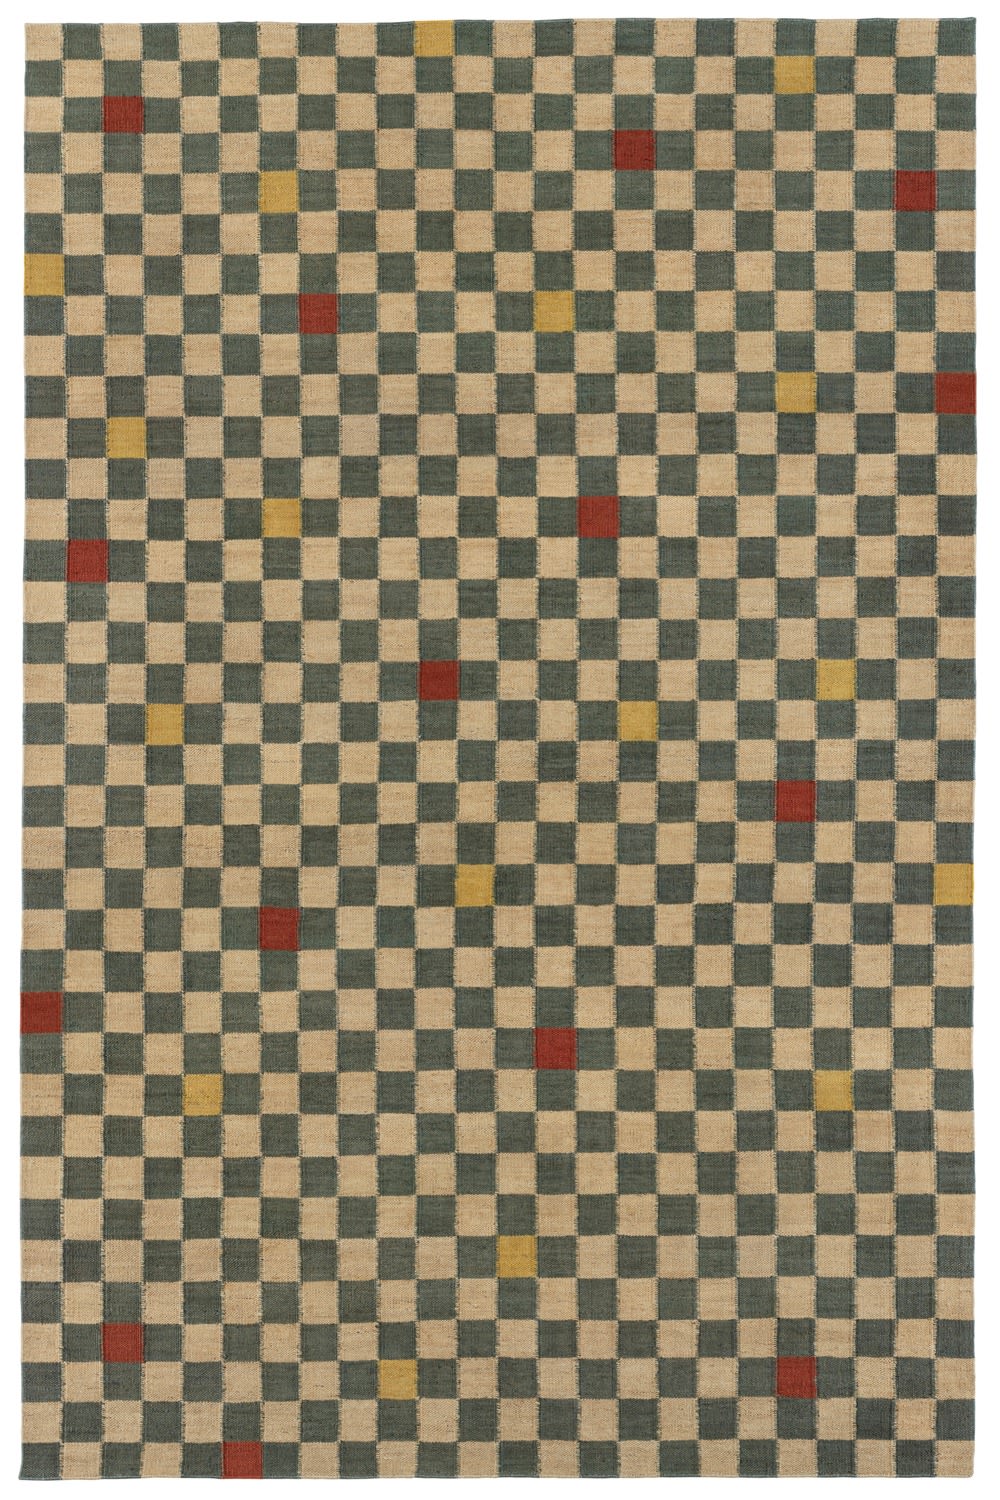 Vanderhurd x 8 Holland Street: Checkerboard, Bishop, Woven Dhurrie, Large